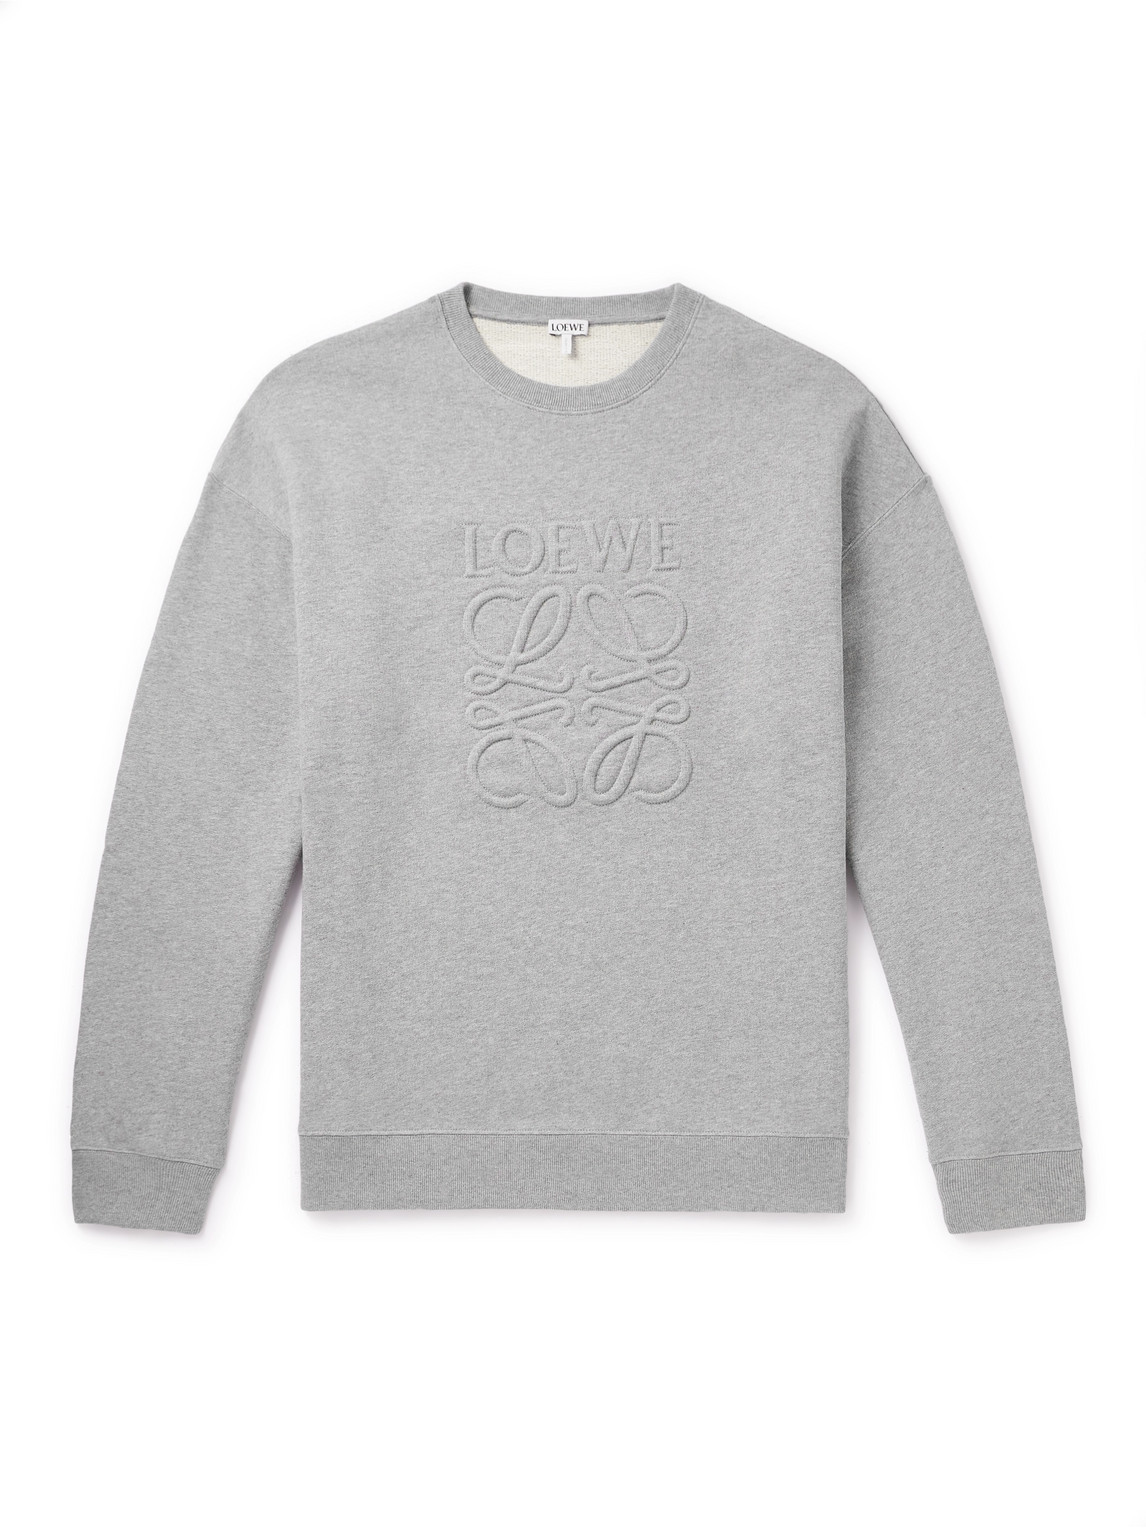 LOEWE - Logo-Embroidered Cotton-Jersey Sweatshirt - Men - Gray - XXL von LOEWE